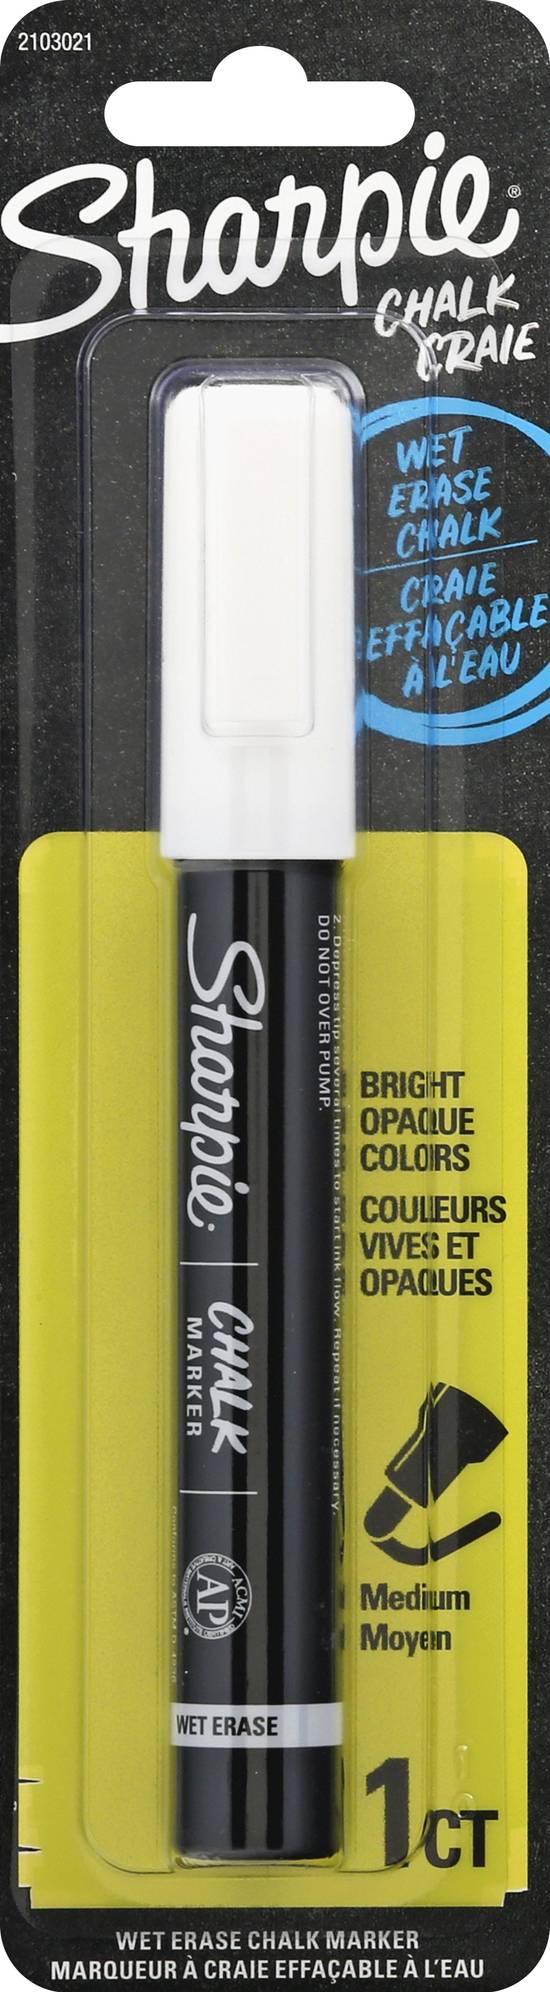 Sharpie Wet Erase Chalk Marker